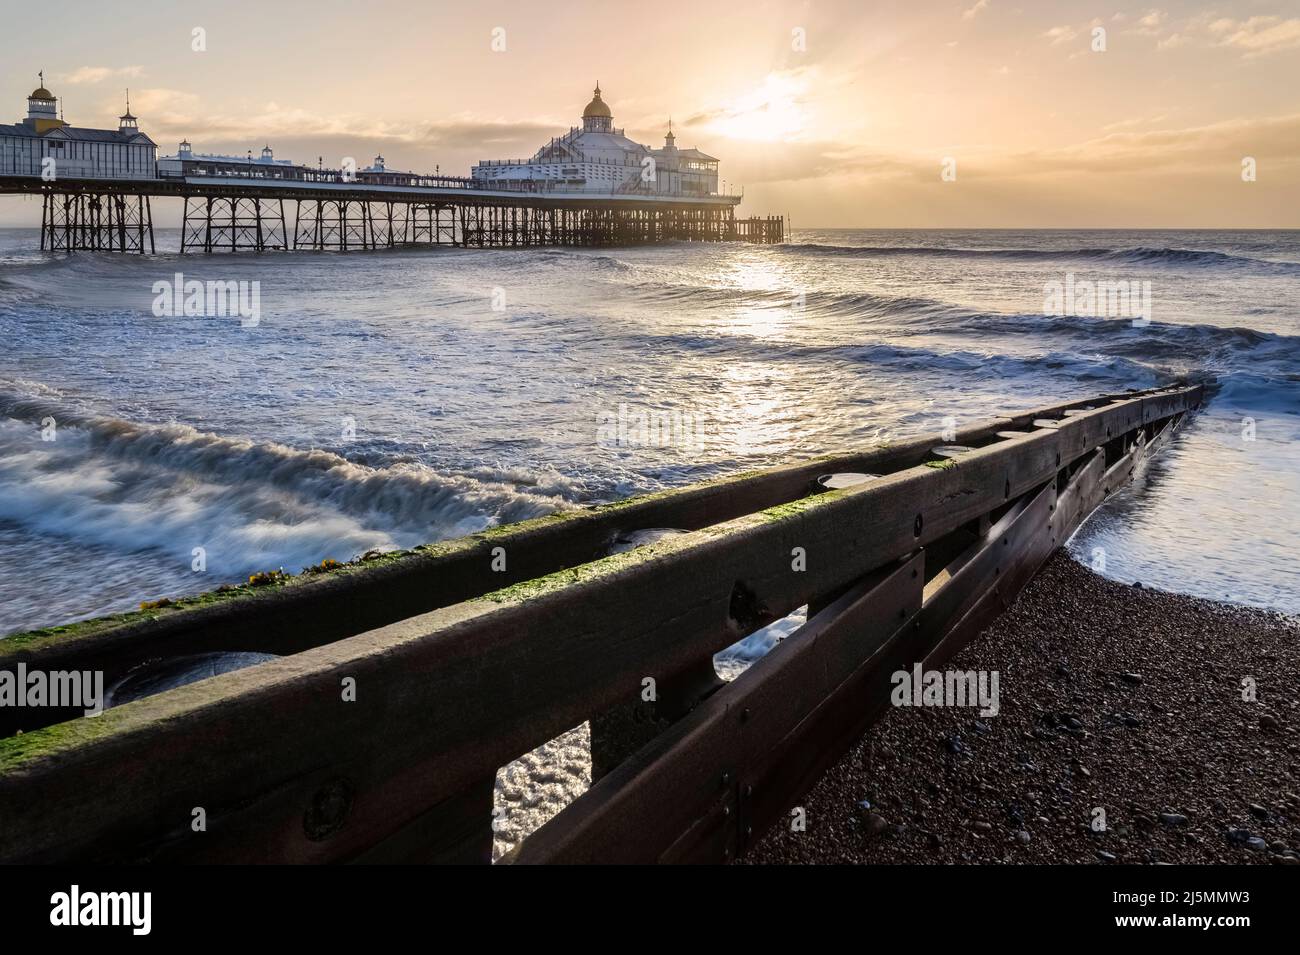 Vue sur la jetée du Palais au lever du soleil. Brighton, East Sussex, sud de l'Angleterre, Royaume-Uni. Banque D'Images